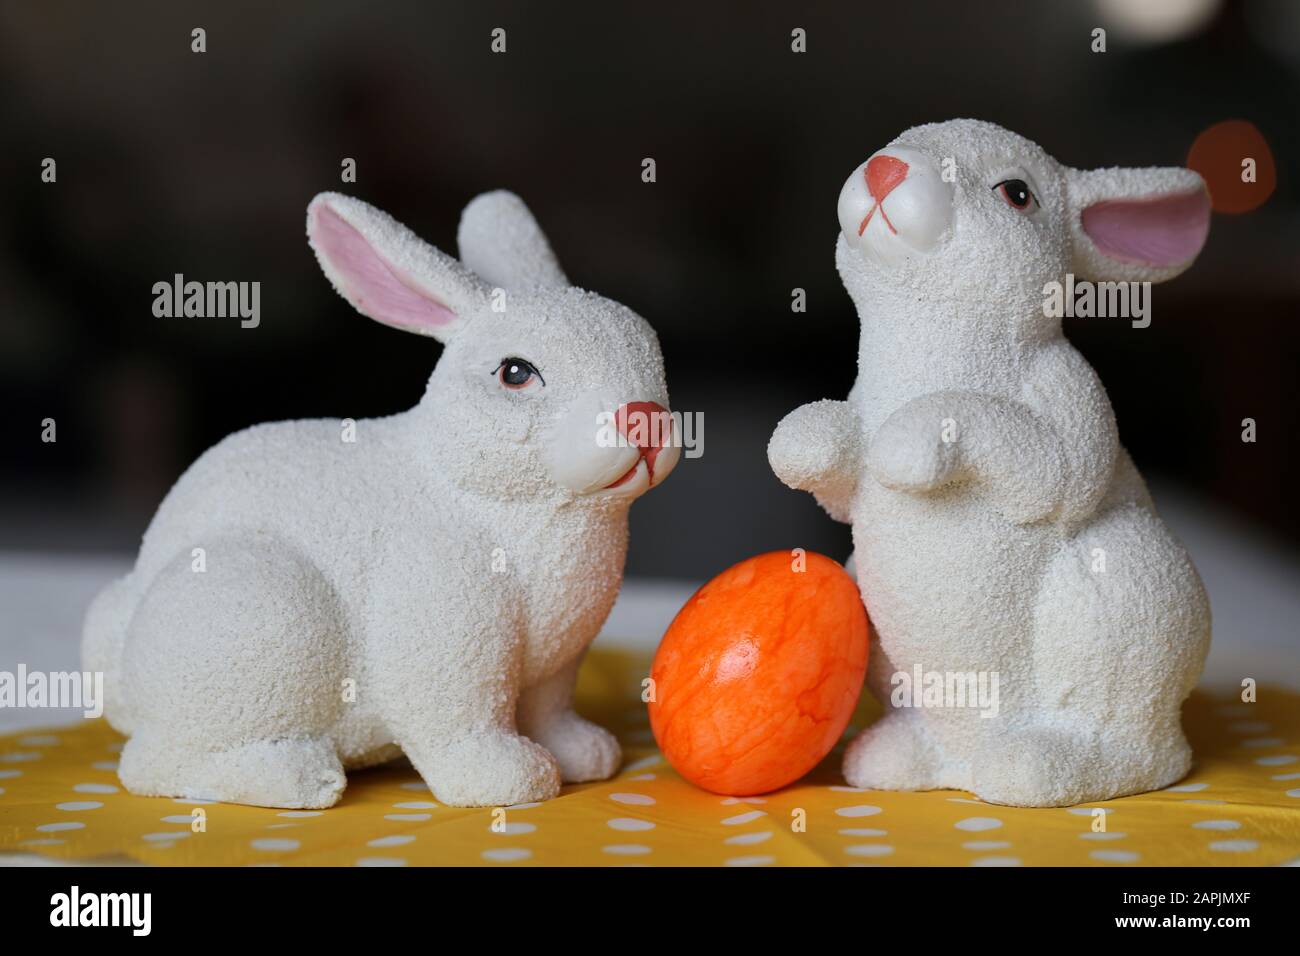 Decorazioni pasquali colorate e gioiose su un tavolo. Immagine a colori closeup di due coniglietti di Pasqua in ceramica e colorate uova di Pasqua dipinte. Foto Stock